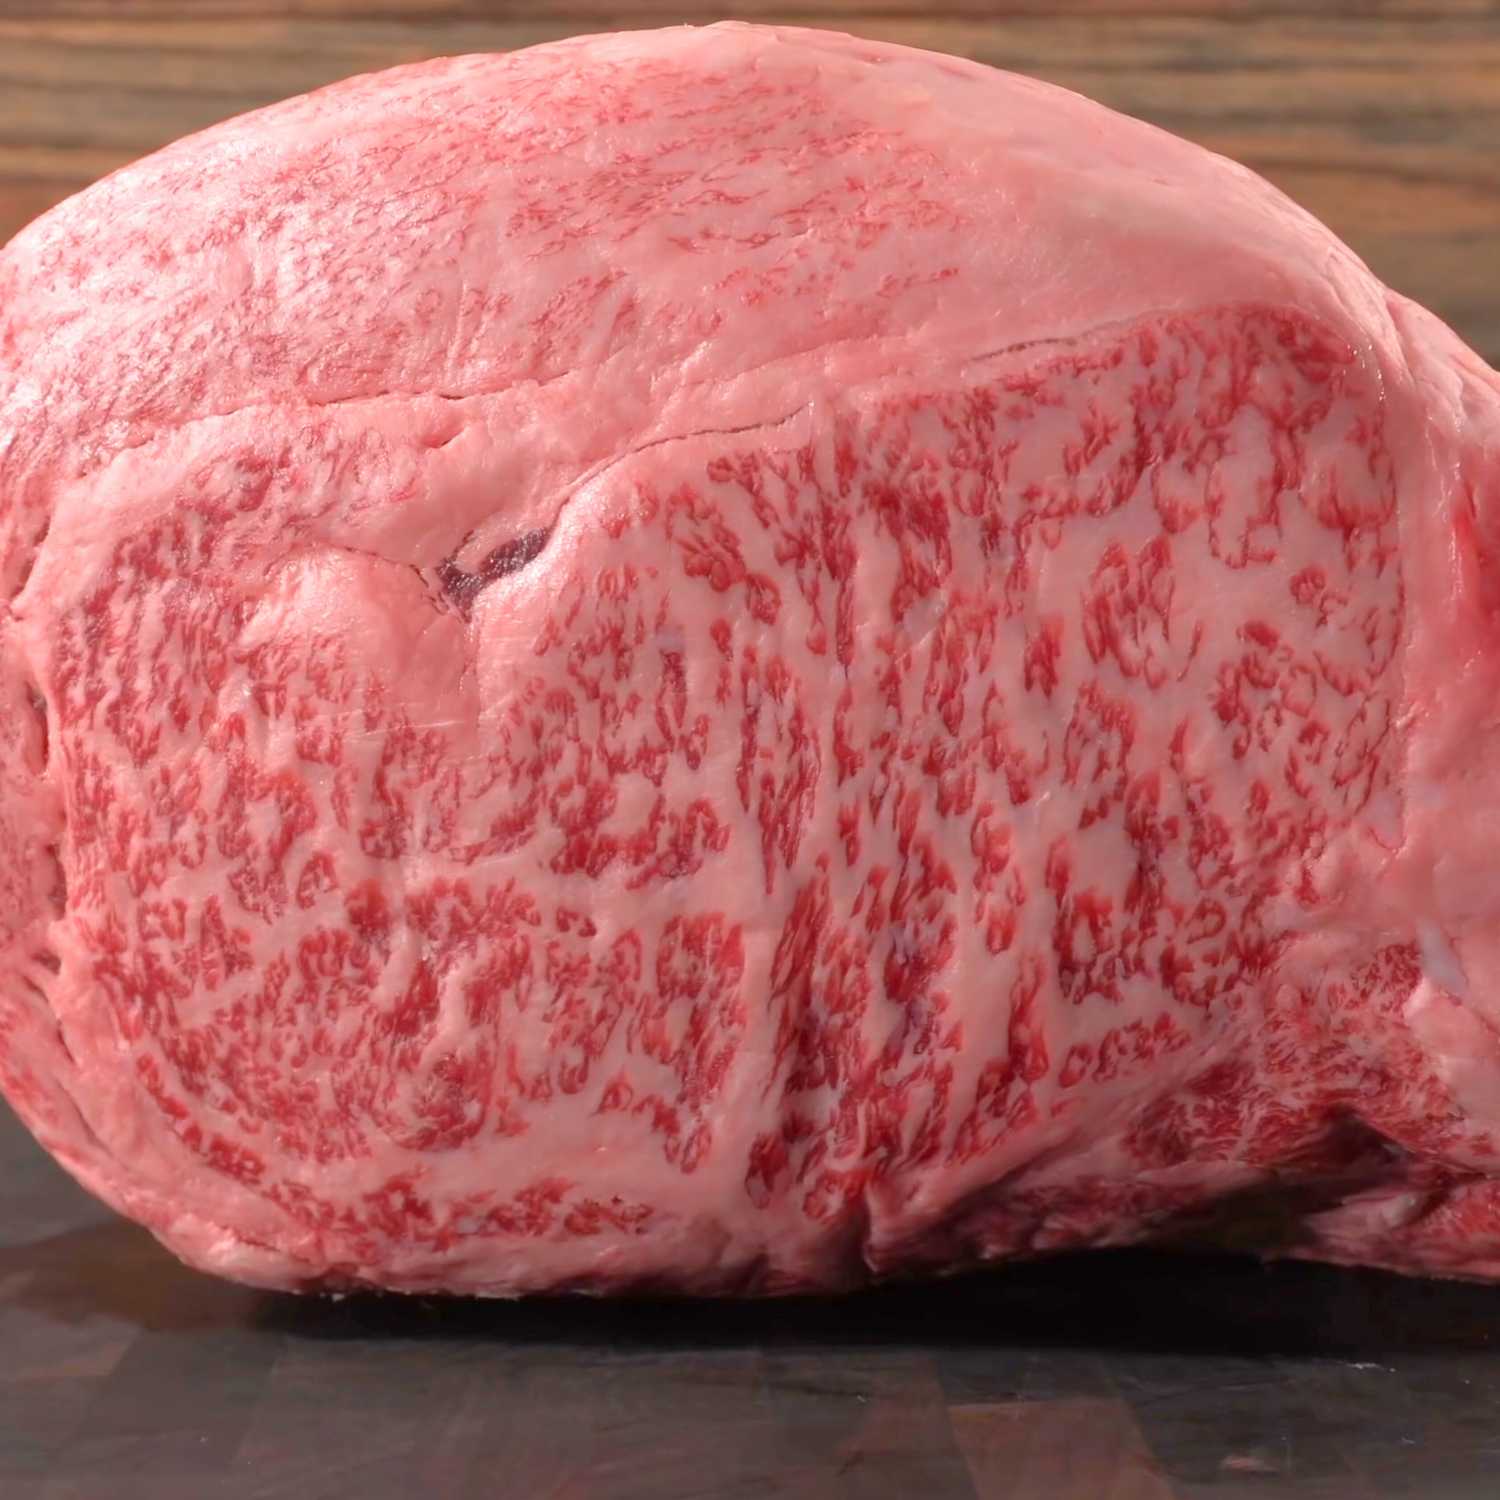 Korean Premium Hanwoo Ribeye Steak